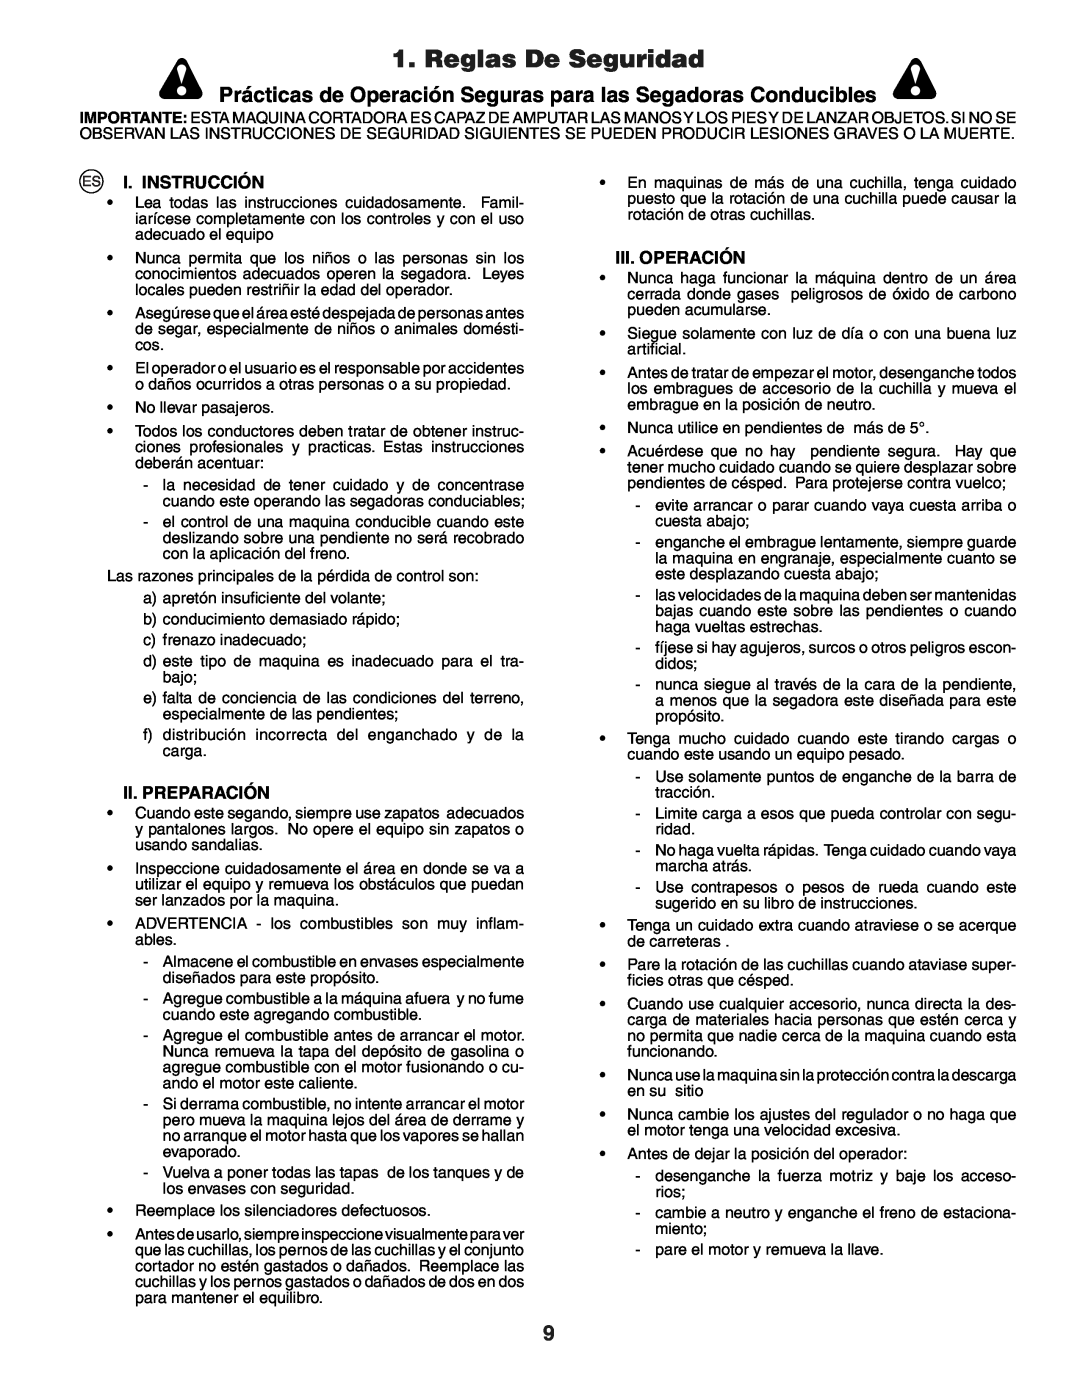 Husqvarna YTH151 Reglas De Seguridad, Prácticas de Operación Seguras para las Segadoras Conducibles, I. Instrucción 